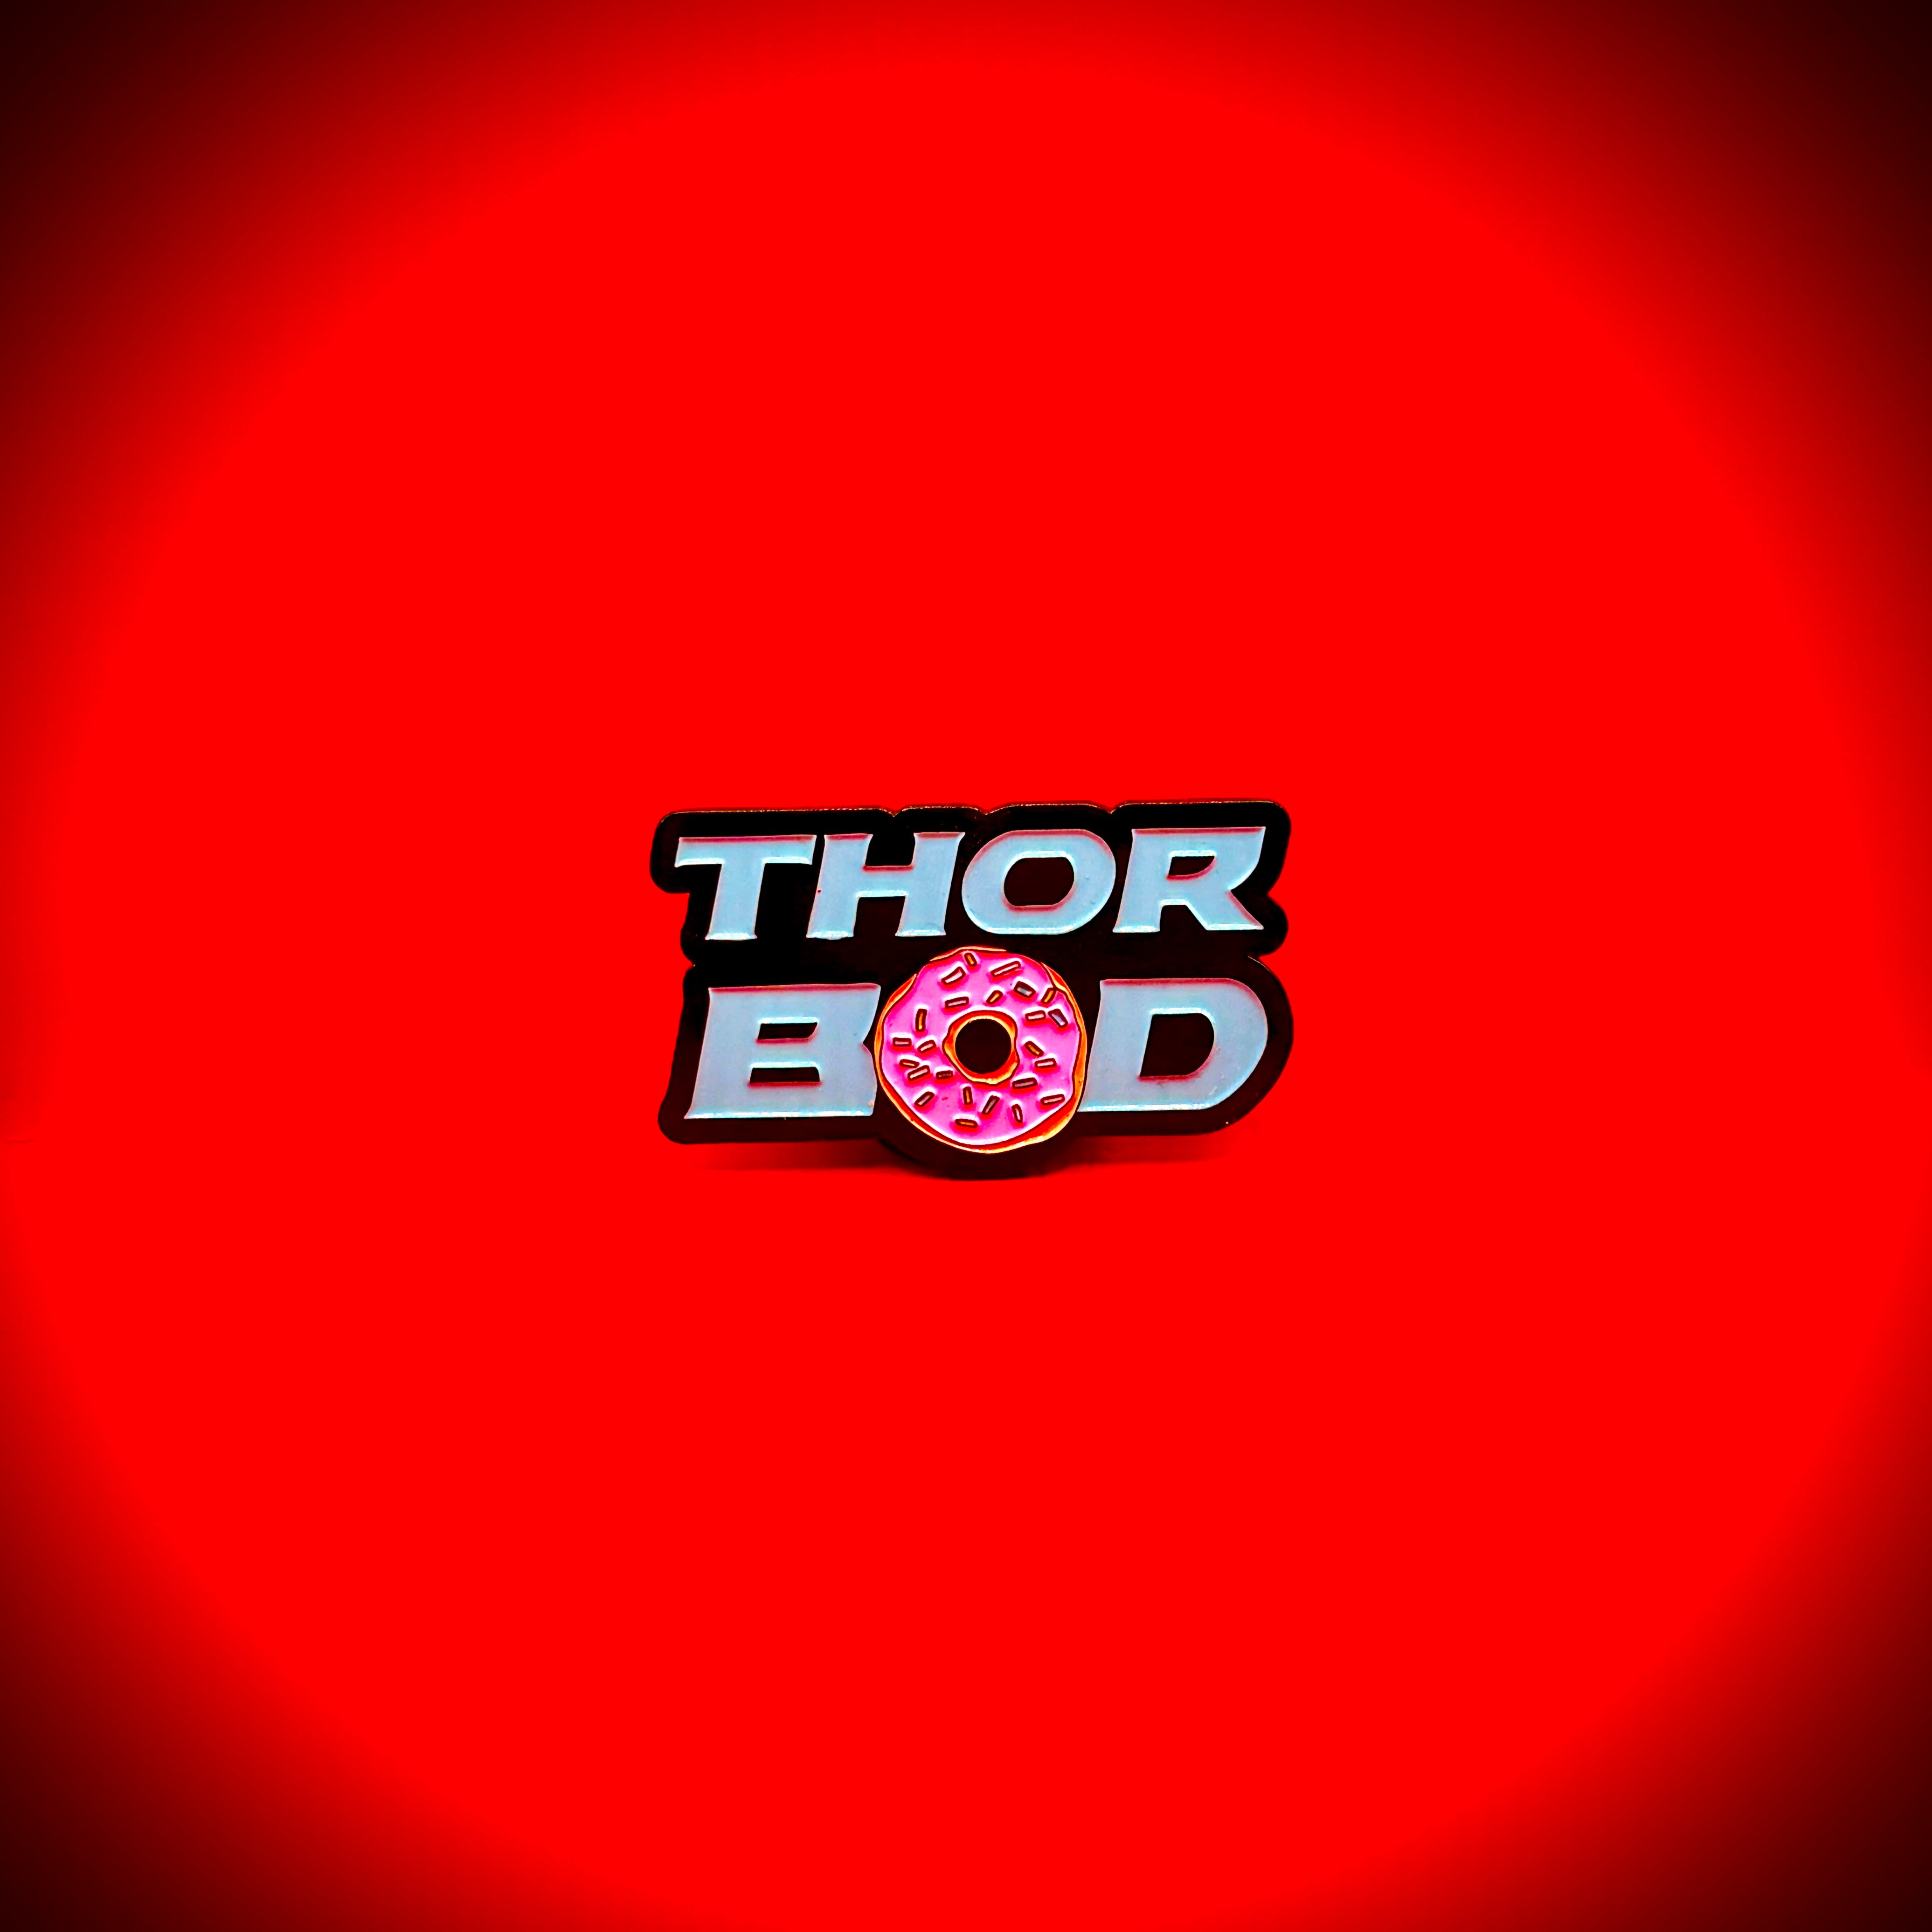 Thor Bod - Pin